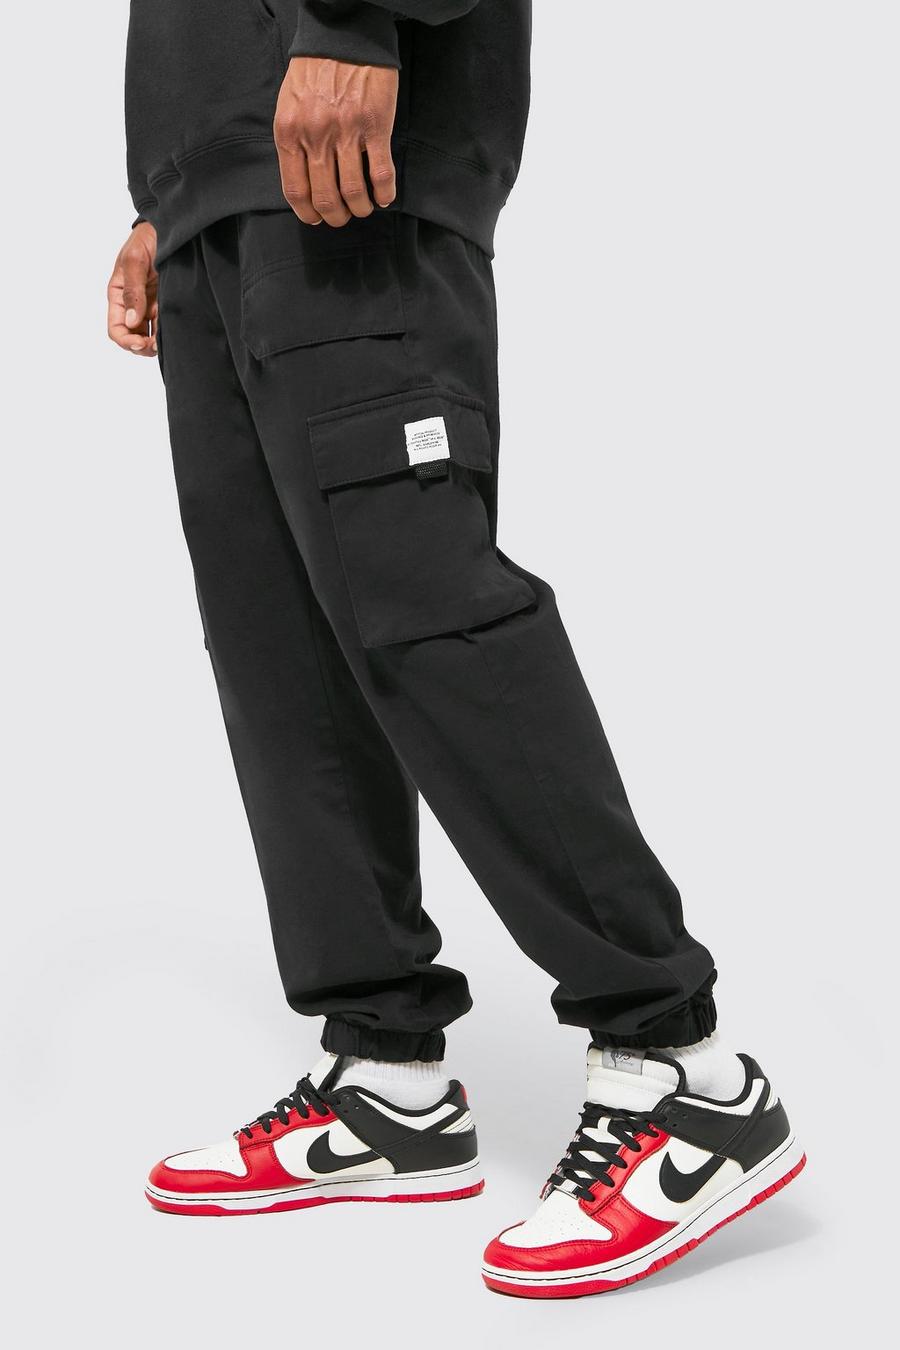 שחור negro מכנסי טרנינג קרגו מבד טוויל בגזרה רגילה עם חגורה